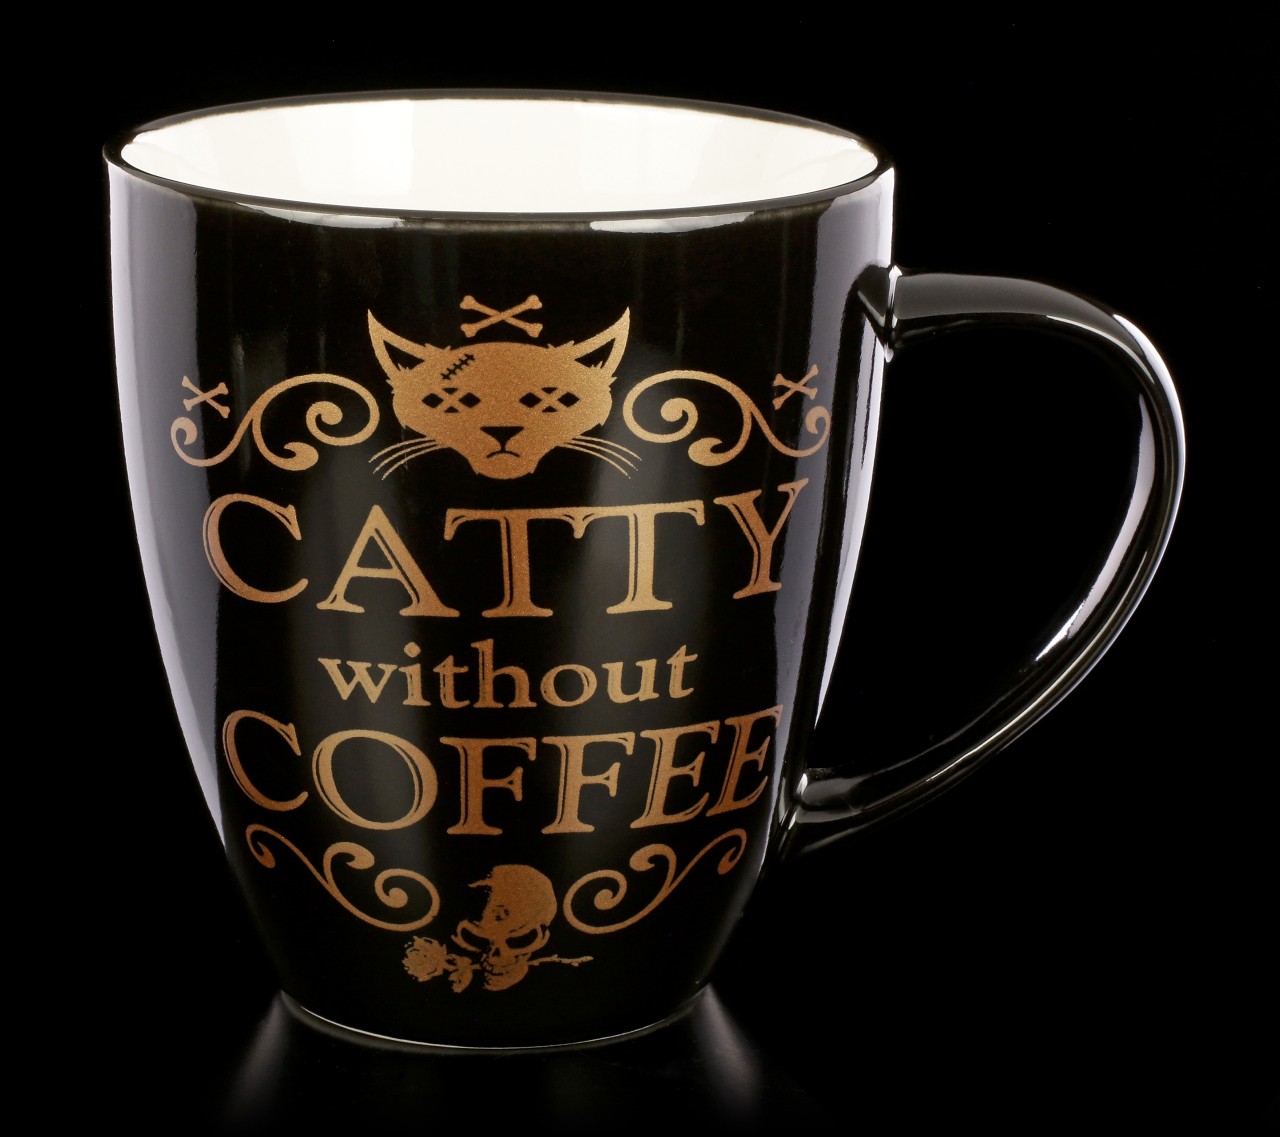 Alchemy Gothic Mug - Catty Without Coffee